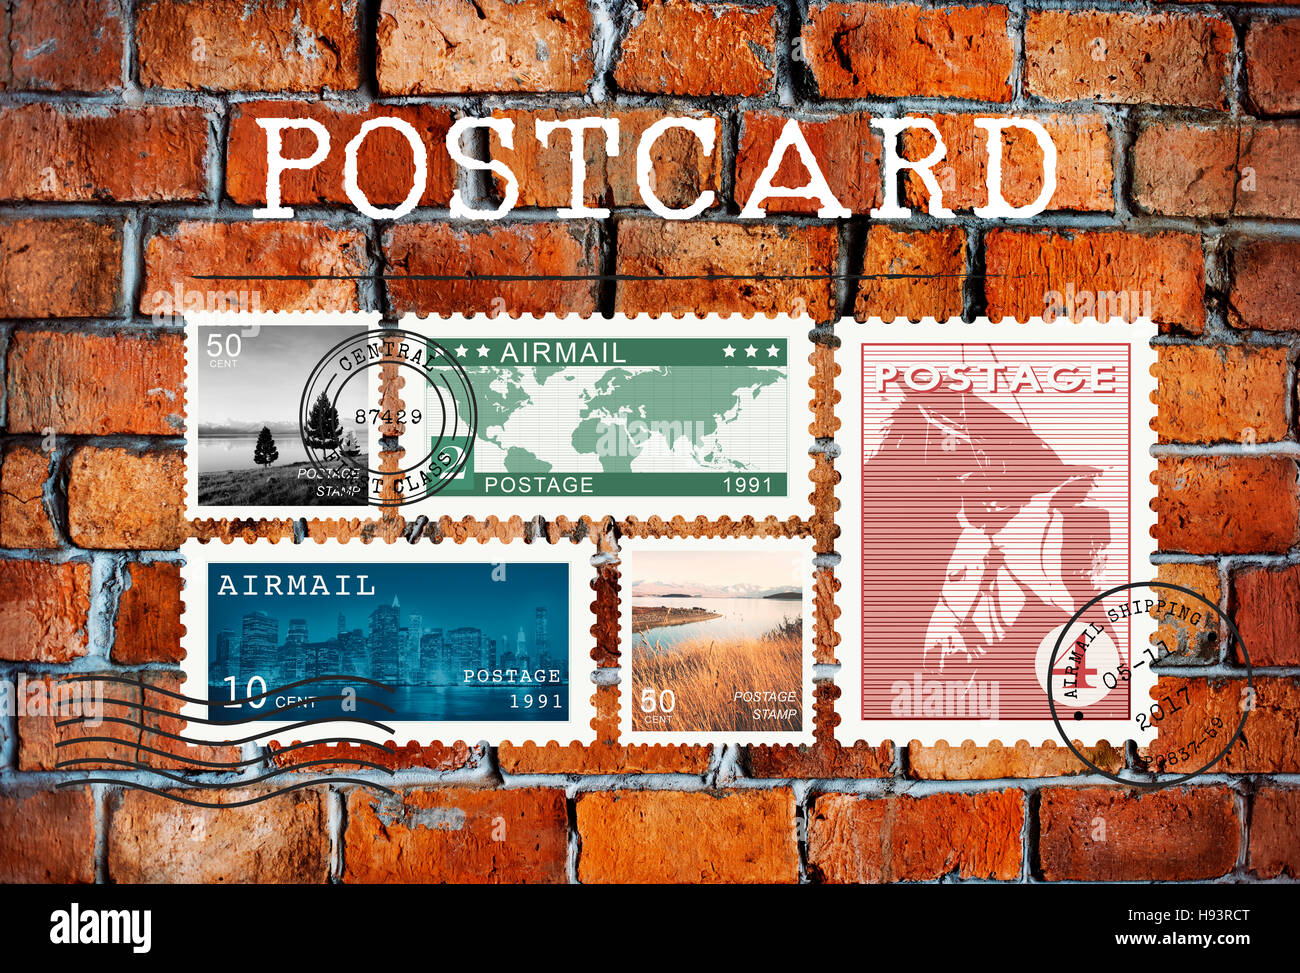 Luftpost Brief Briefmarke Mailkonzept Postkarte Stockfoto